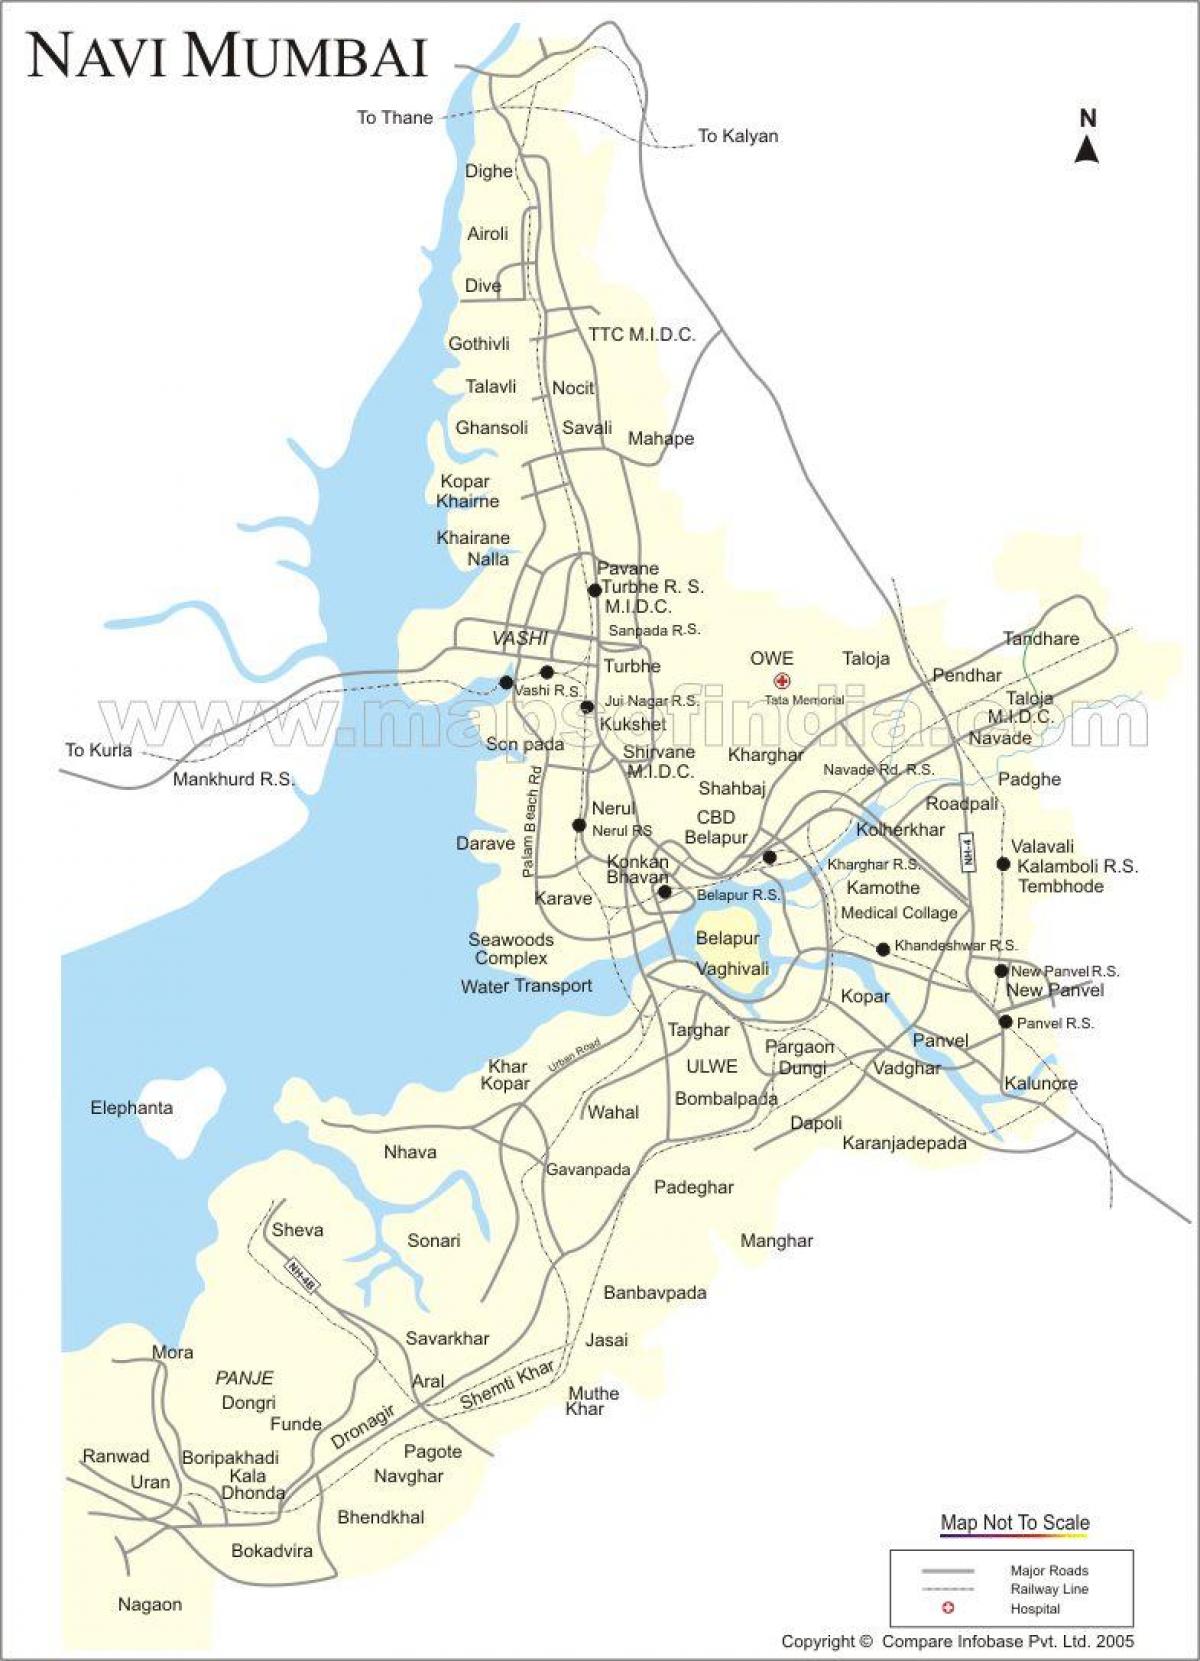 नक्शे की नई मुंबई